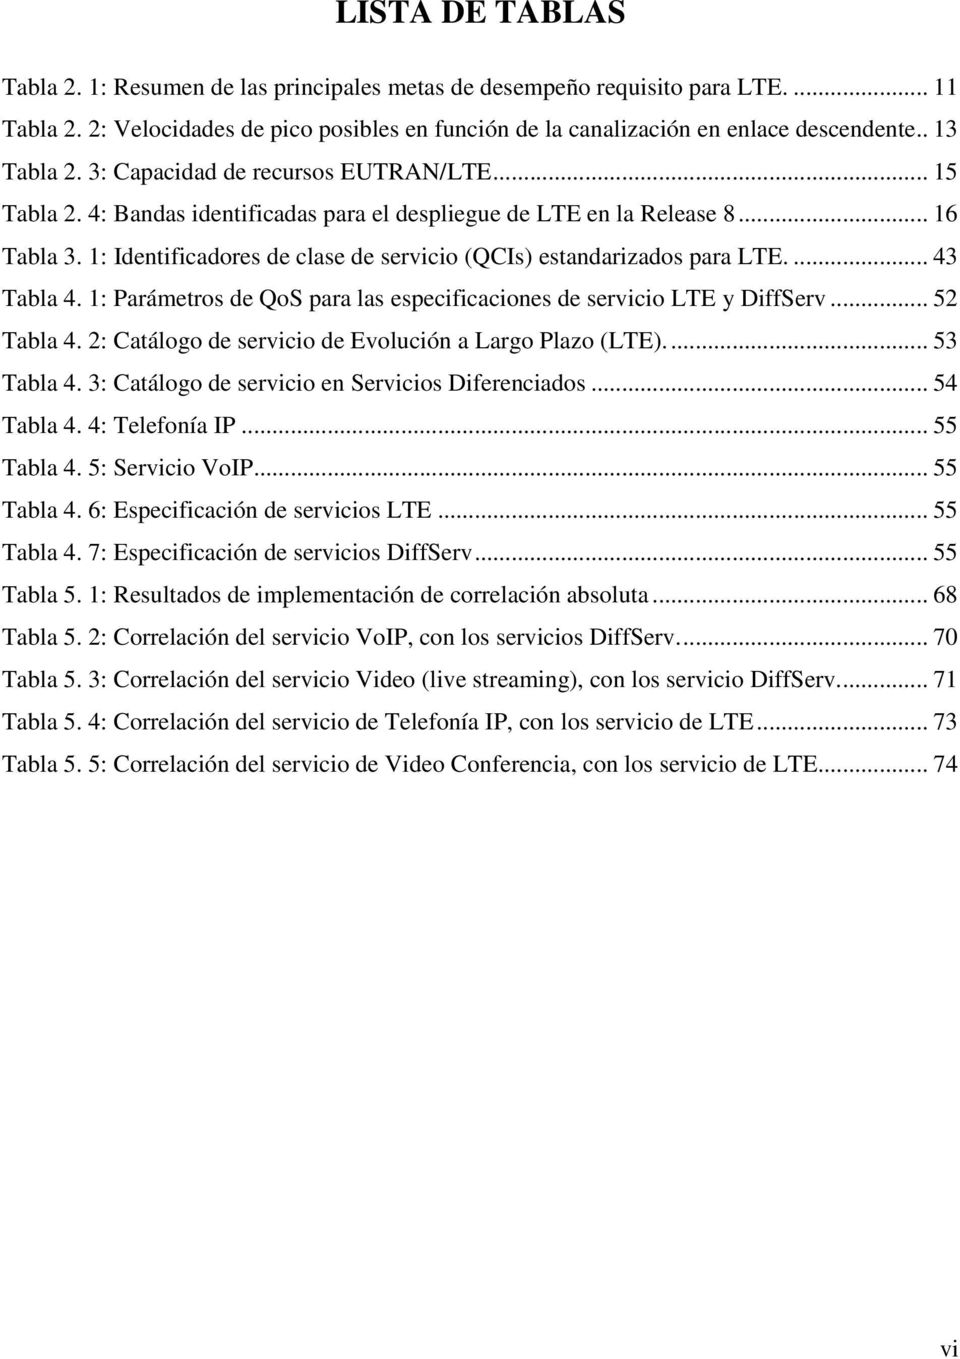 1: Identificadores de clase de servicio (QCIs) estandarizados para LTE.... 43 Tabla 4. 1: Parámetros de QoS para las especificaciones de servicio LTE y DiffServ... 52 Tabla 4.